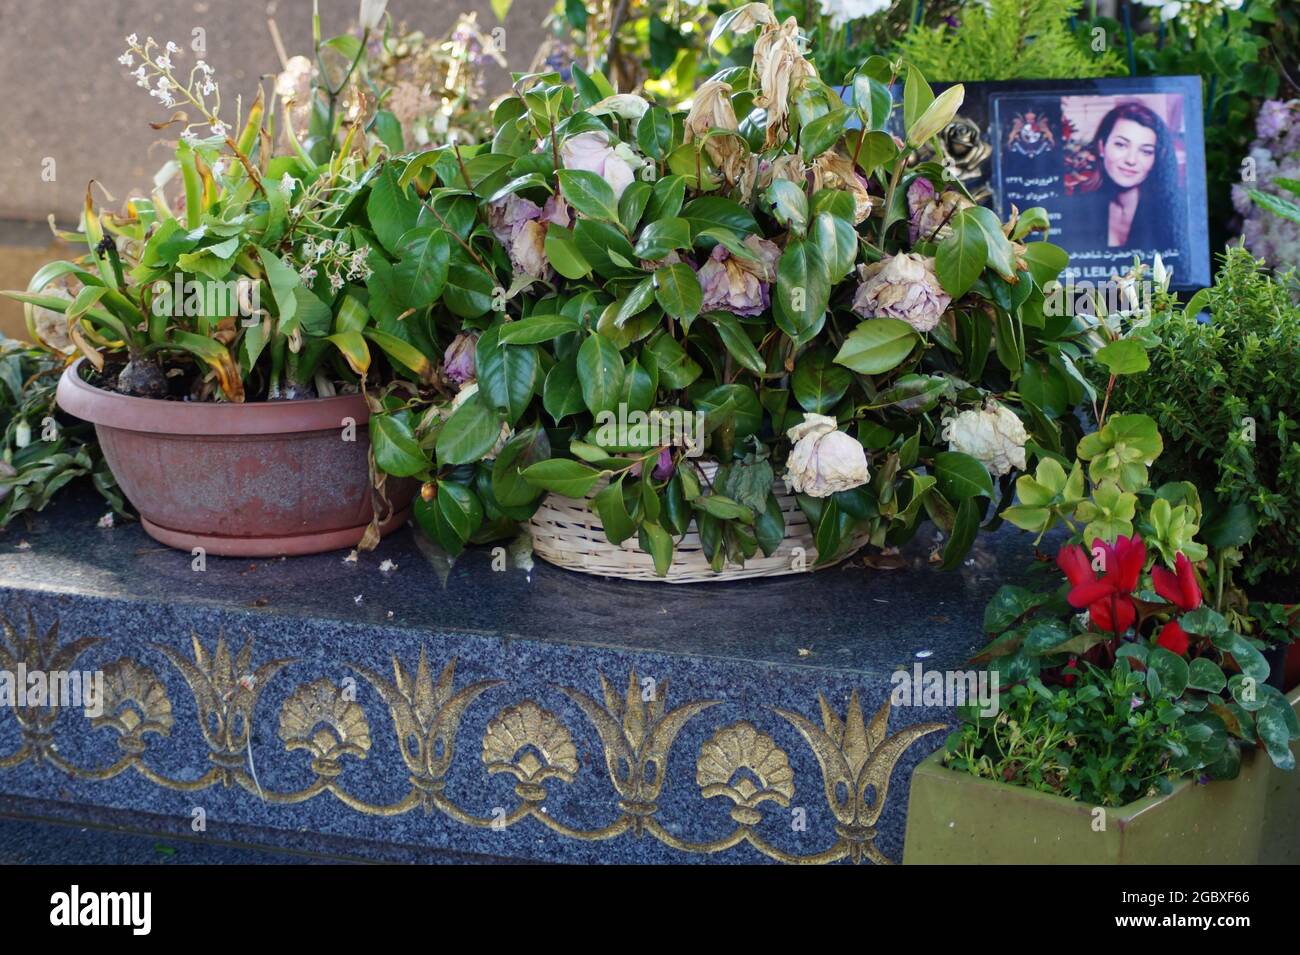 Grabstätte von Prinzessin Leila Pahlavi - Friedhof Passy in Paris Stock Photo